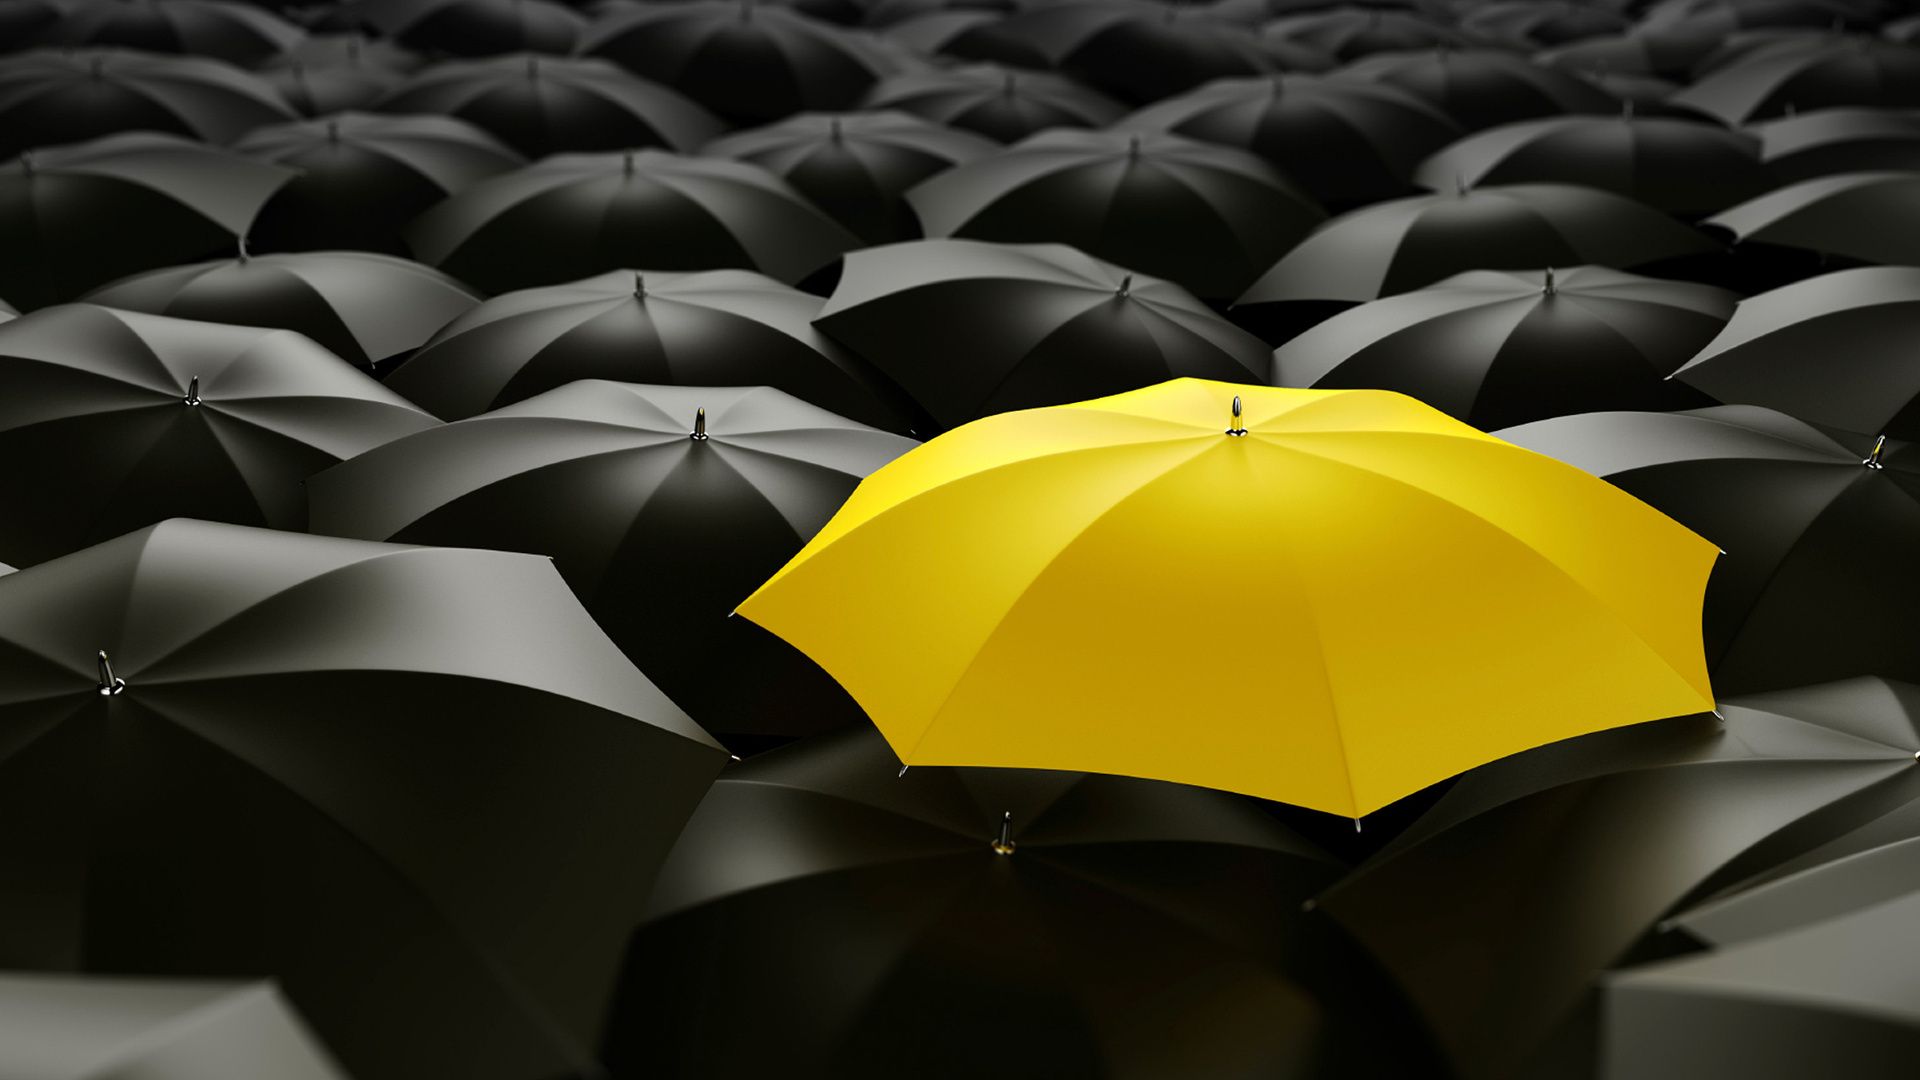 دانلود بک گراند چشم نواز چتر زرد رنگ در میان چترهای مشکی 